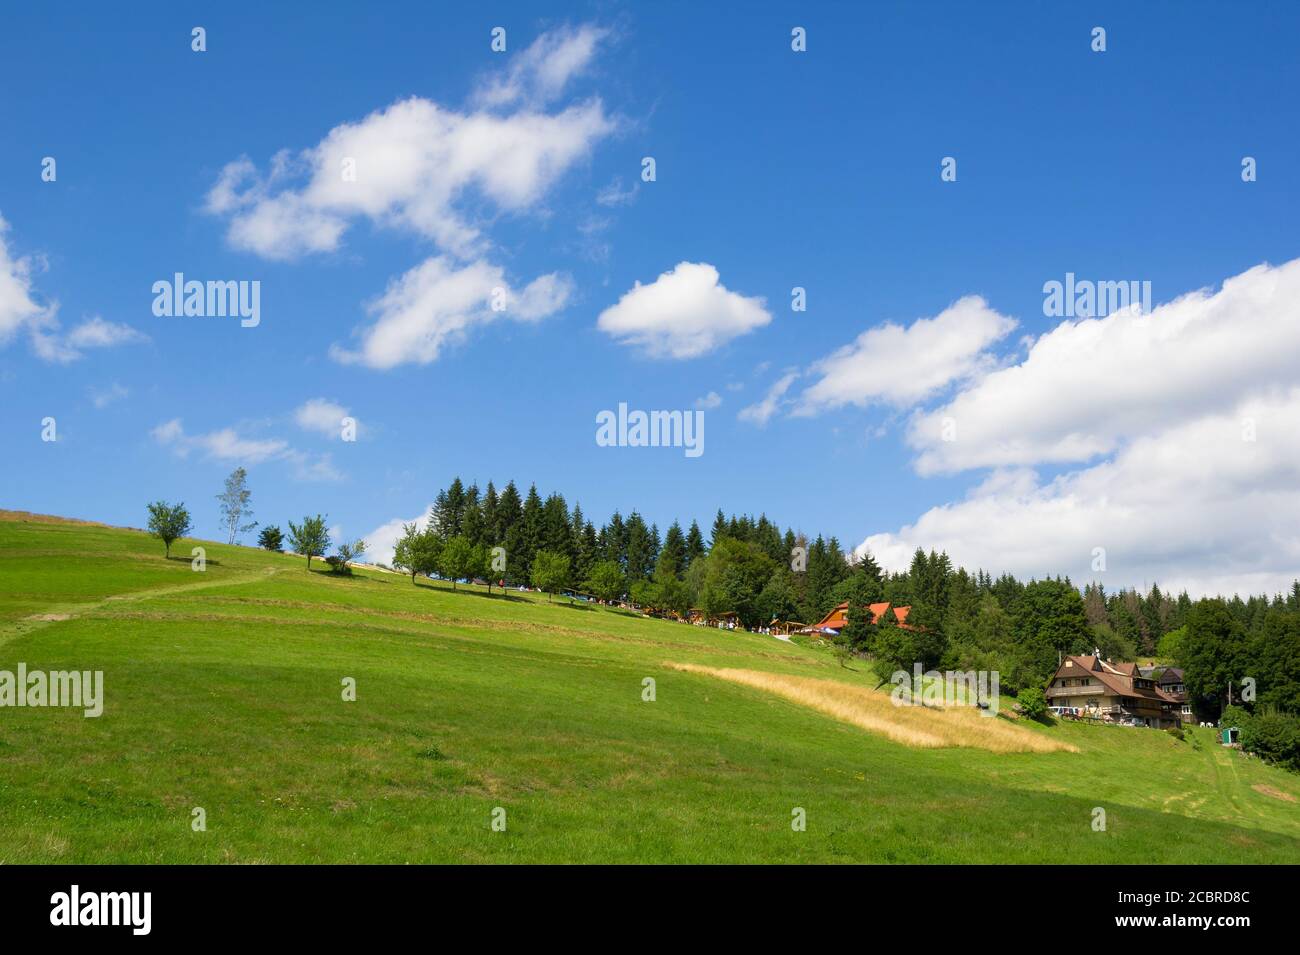 Kamity, Beskiden ( Beskiden, Beskiden ), Schlesien, Tschechien, Tschechien - schöne Natur und Landschaft - Hügel, Wiese mit Gras, Mohn Stockfoto